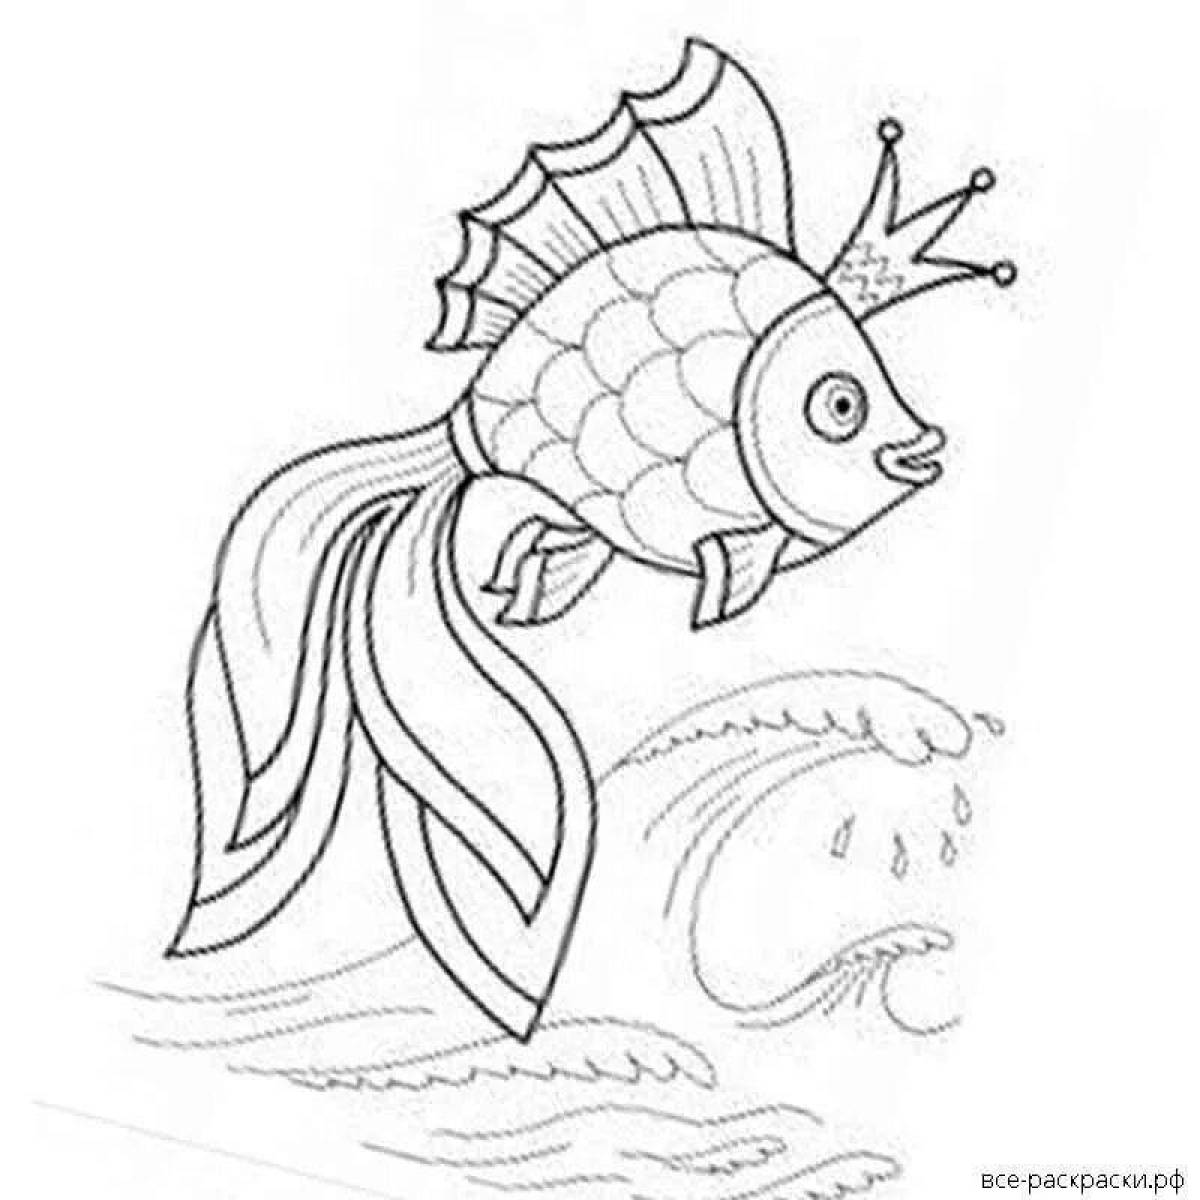 Золотая рыбка из сказки Пушкина картинки раскраски